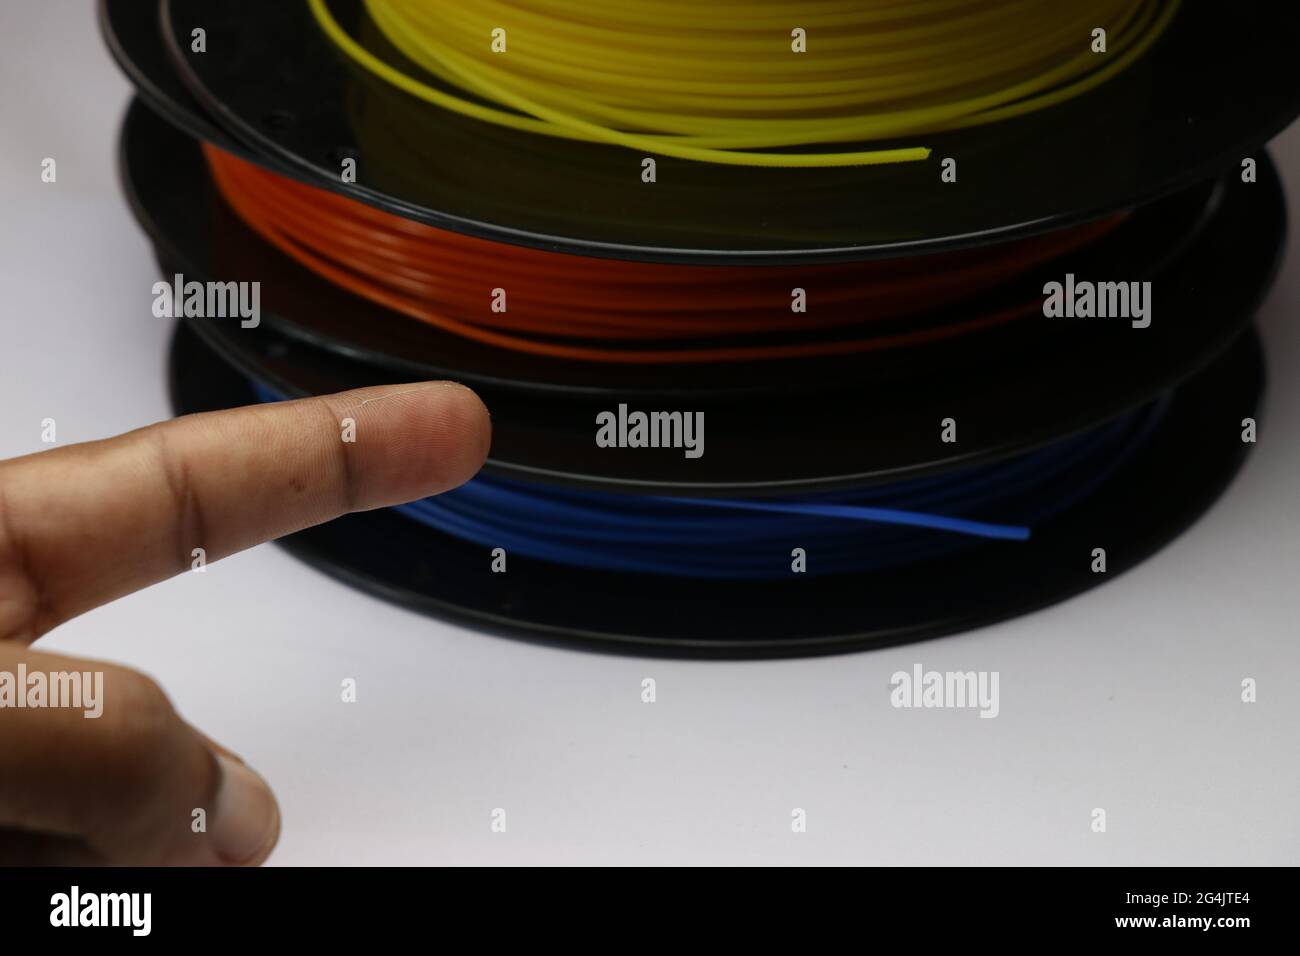 Hand zeigt auf 3D-Drucker Filamente flach auf Spulen mit verschiedenen  Farben gelegt. Das Konzept zeigt, dass thermoplastischer Kunststoff  verwendet wird, der biologisch abbaubar ist Stockfotografie - Alamy